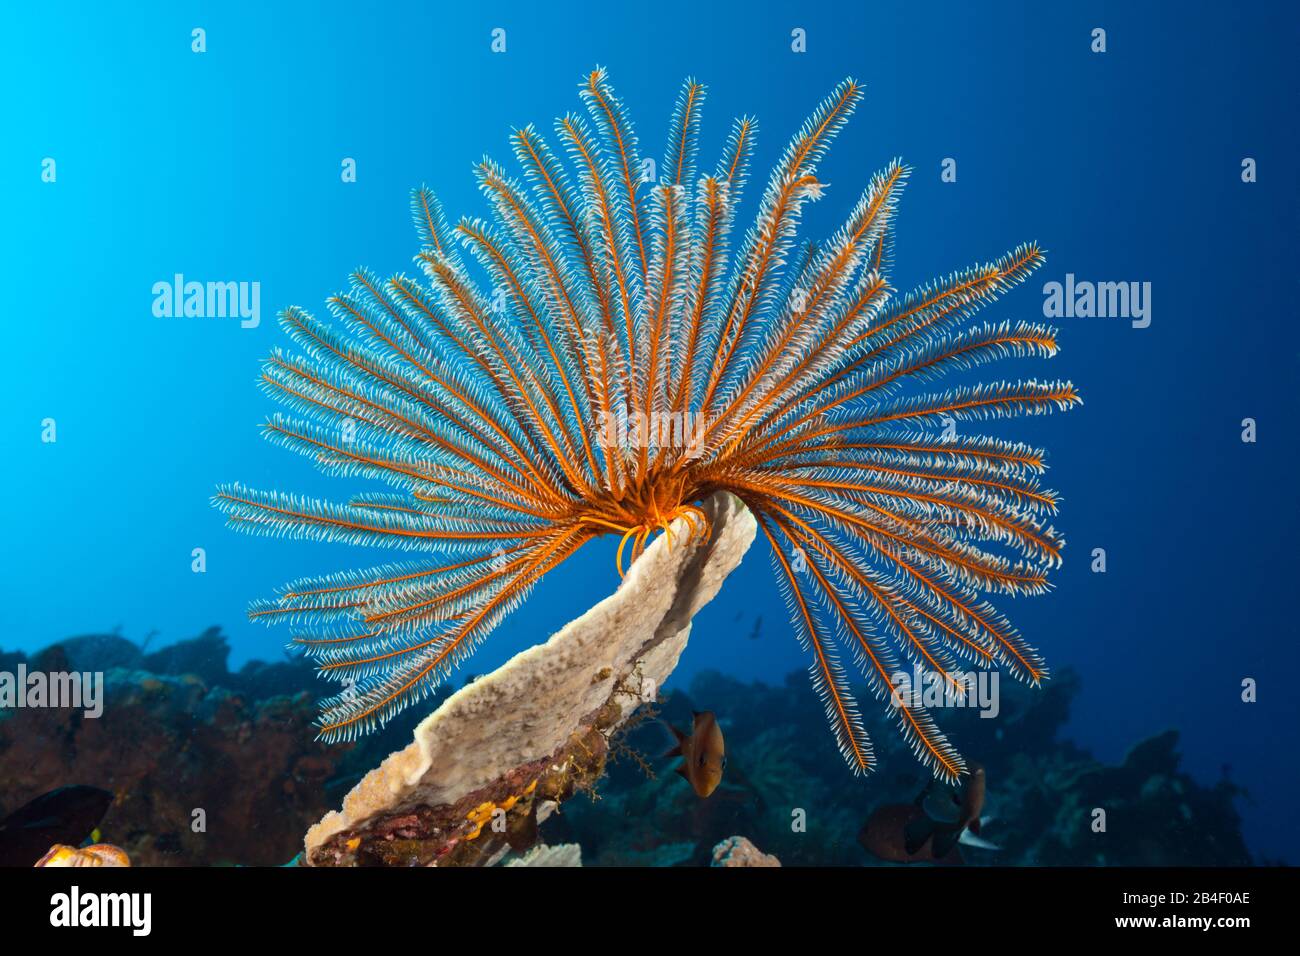 Bushy Feather Star in Coral Reef, Comaster schlegeli, Tufi, Solomon Sea, Papua New Guinea Stock Photo